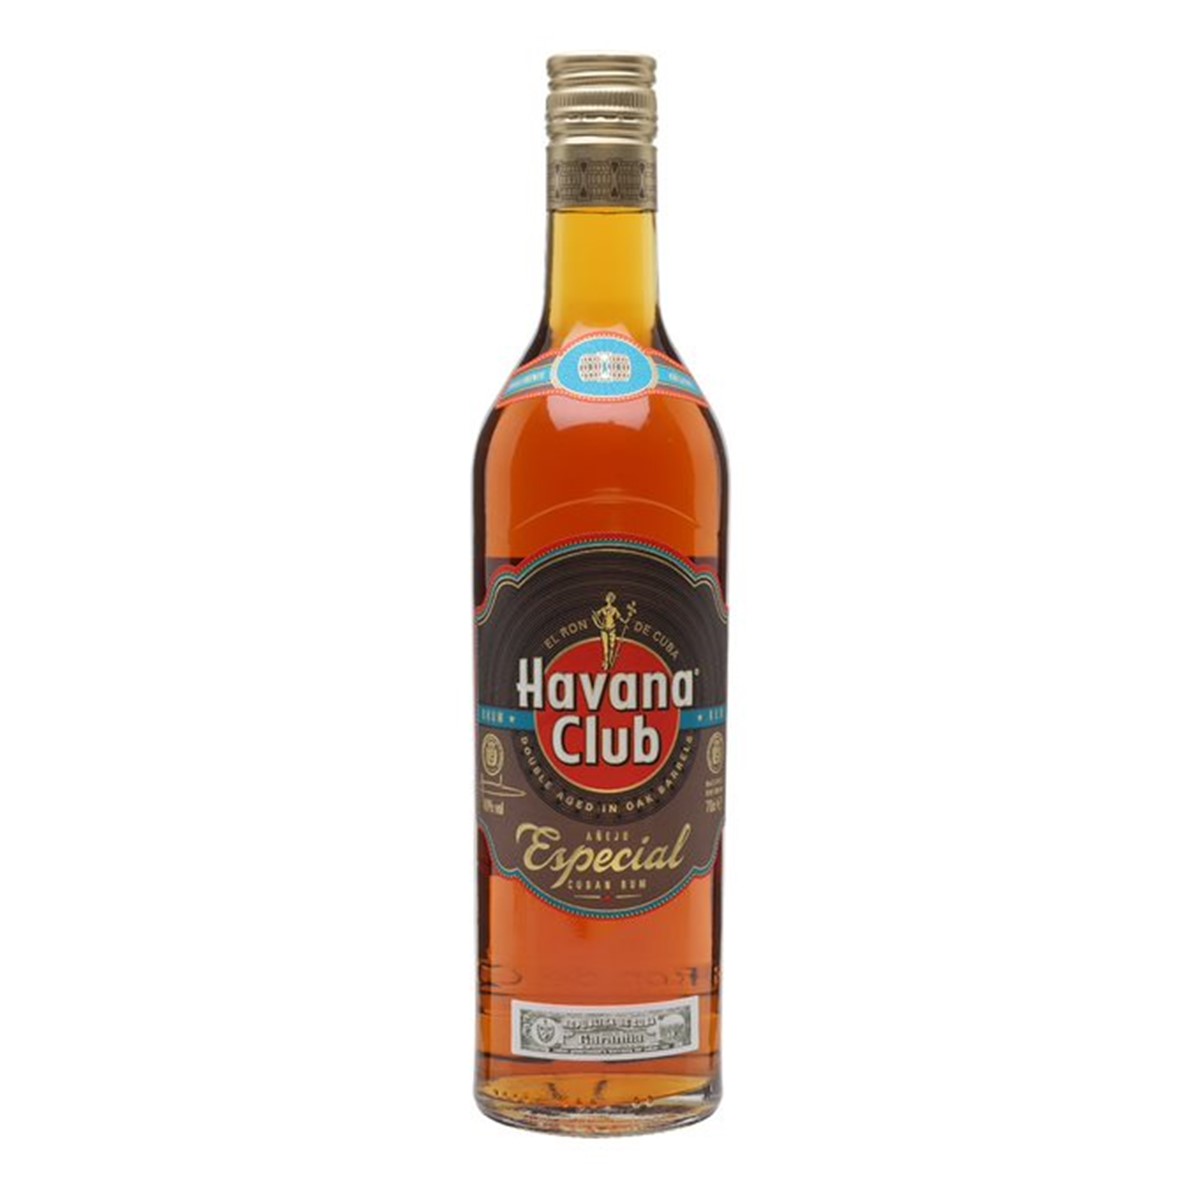 Havana Club Anjelo Especial Golden Rum - 70cl bottle